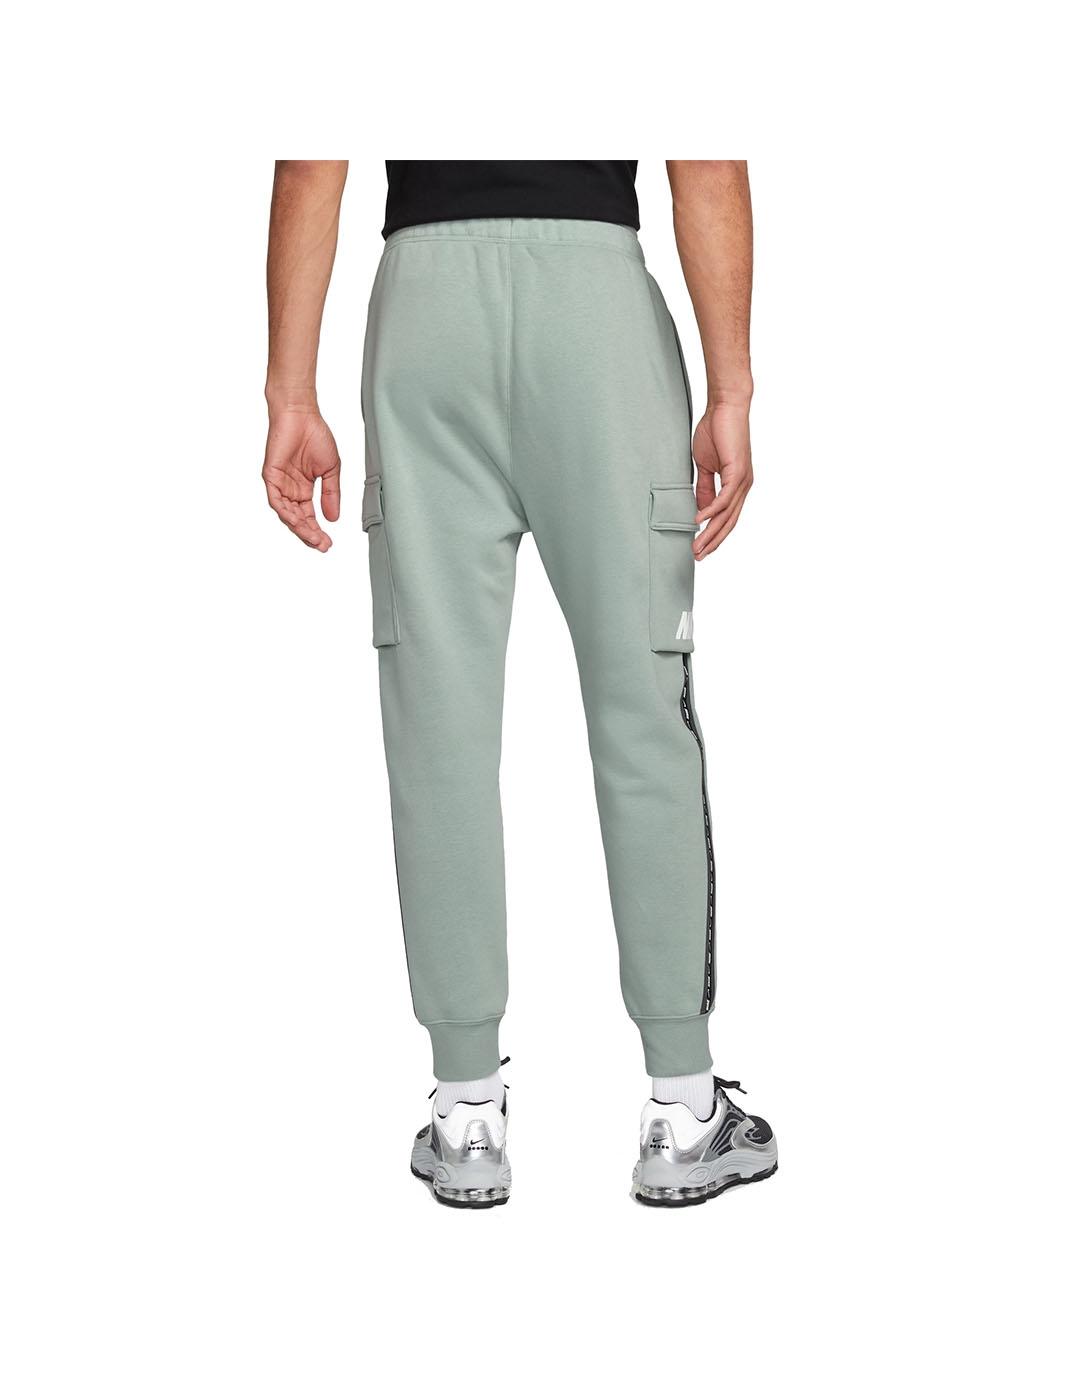 Pantalón Nike Hombre Cargo Repeat Verde